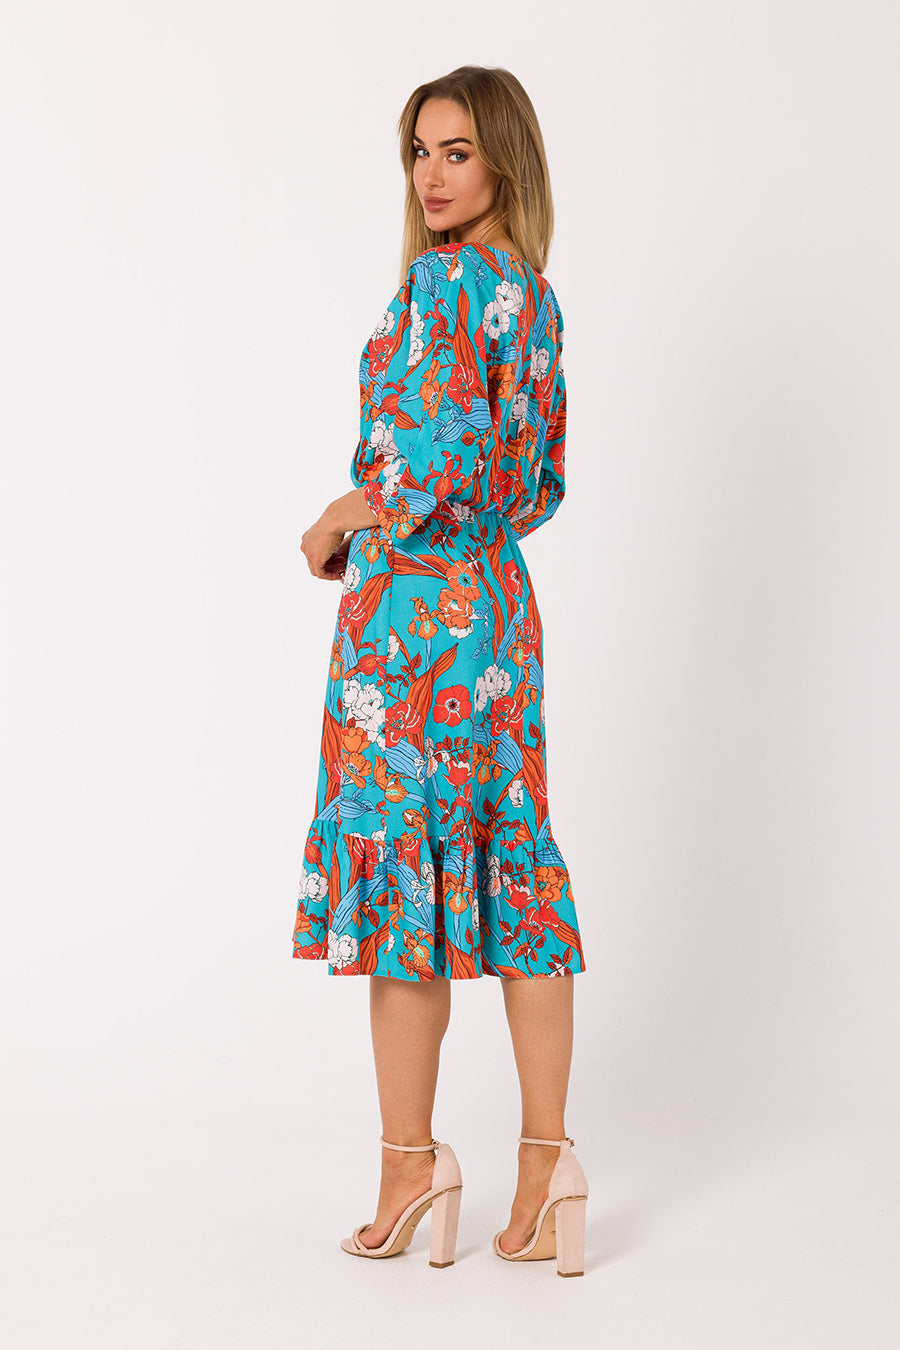 Γυναικείο φόρεμα Anidora, Γαλάζιο/Πορτοκάλι 3